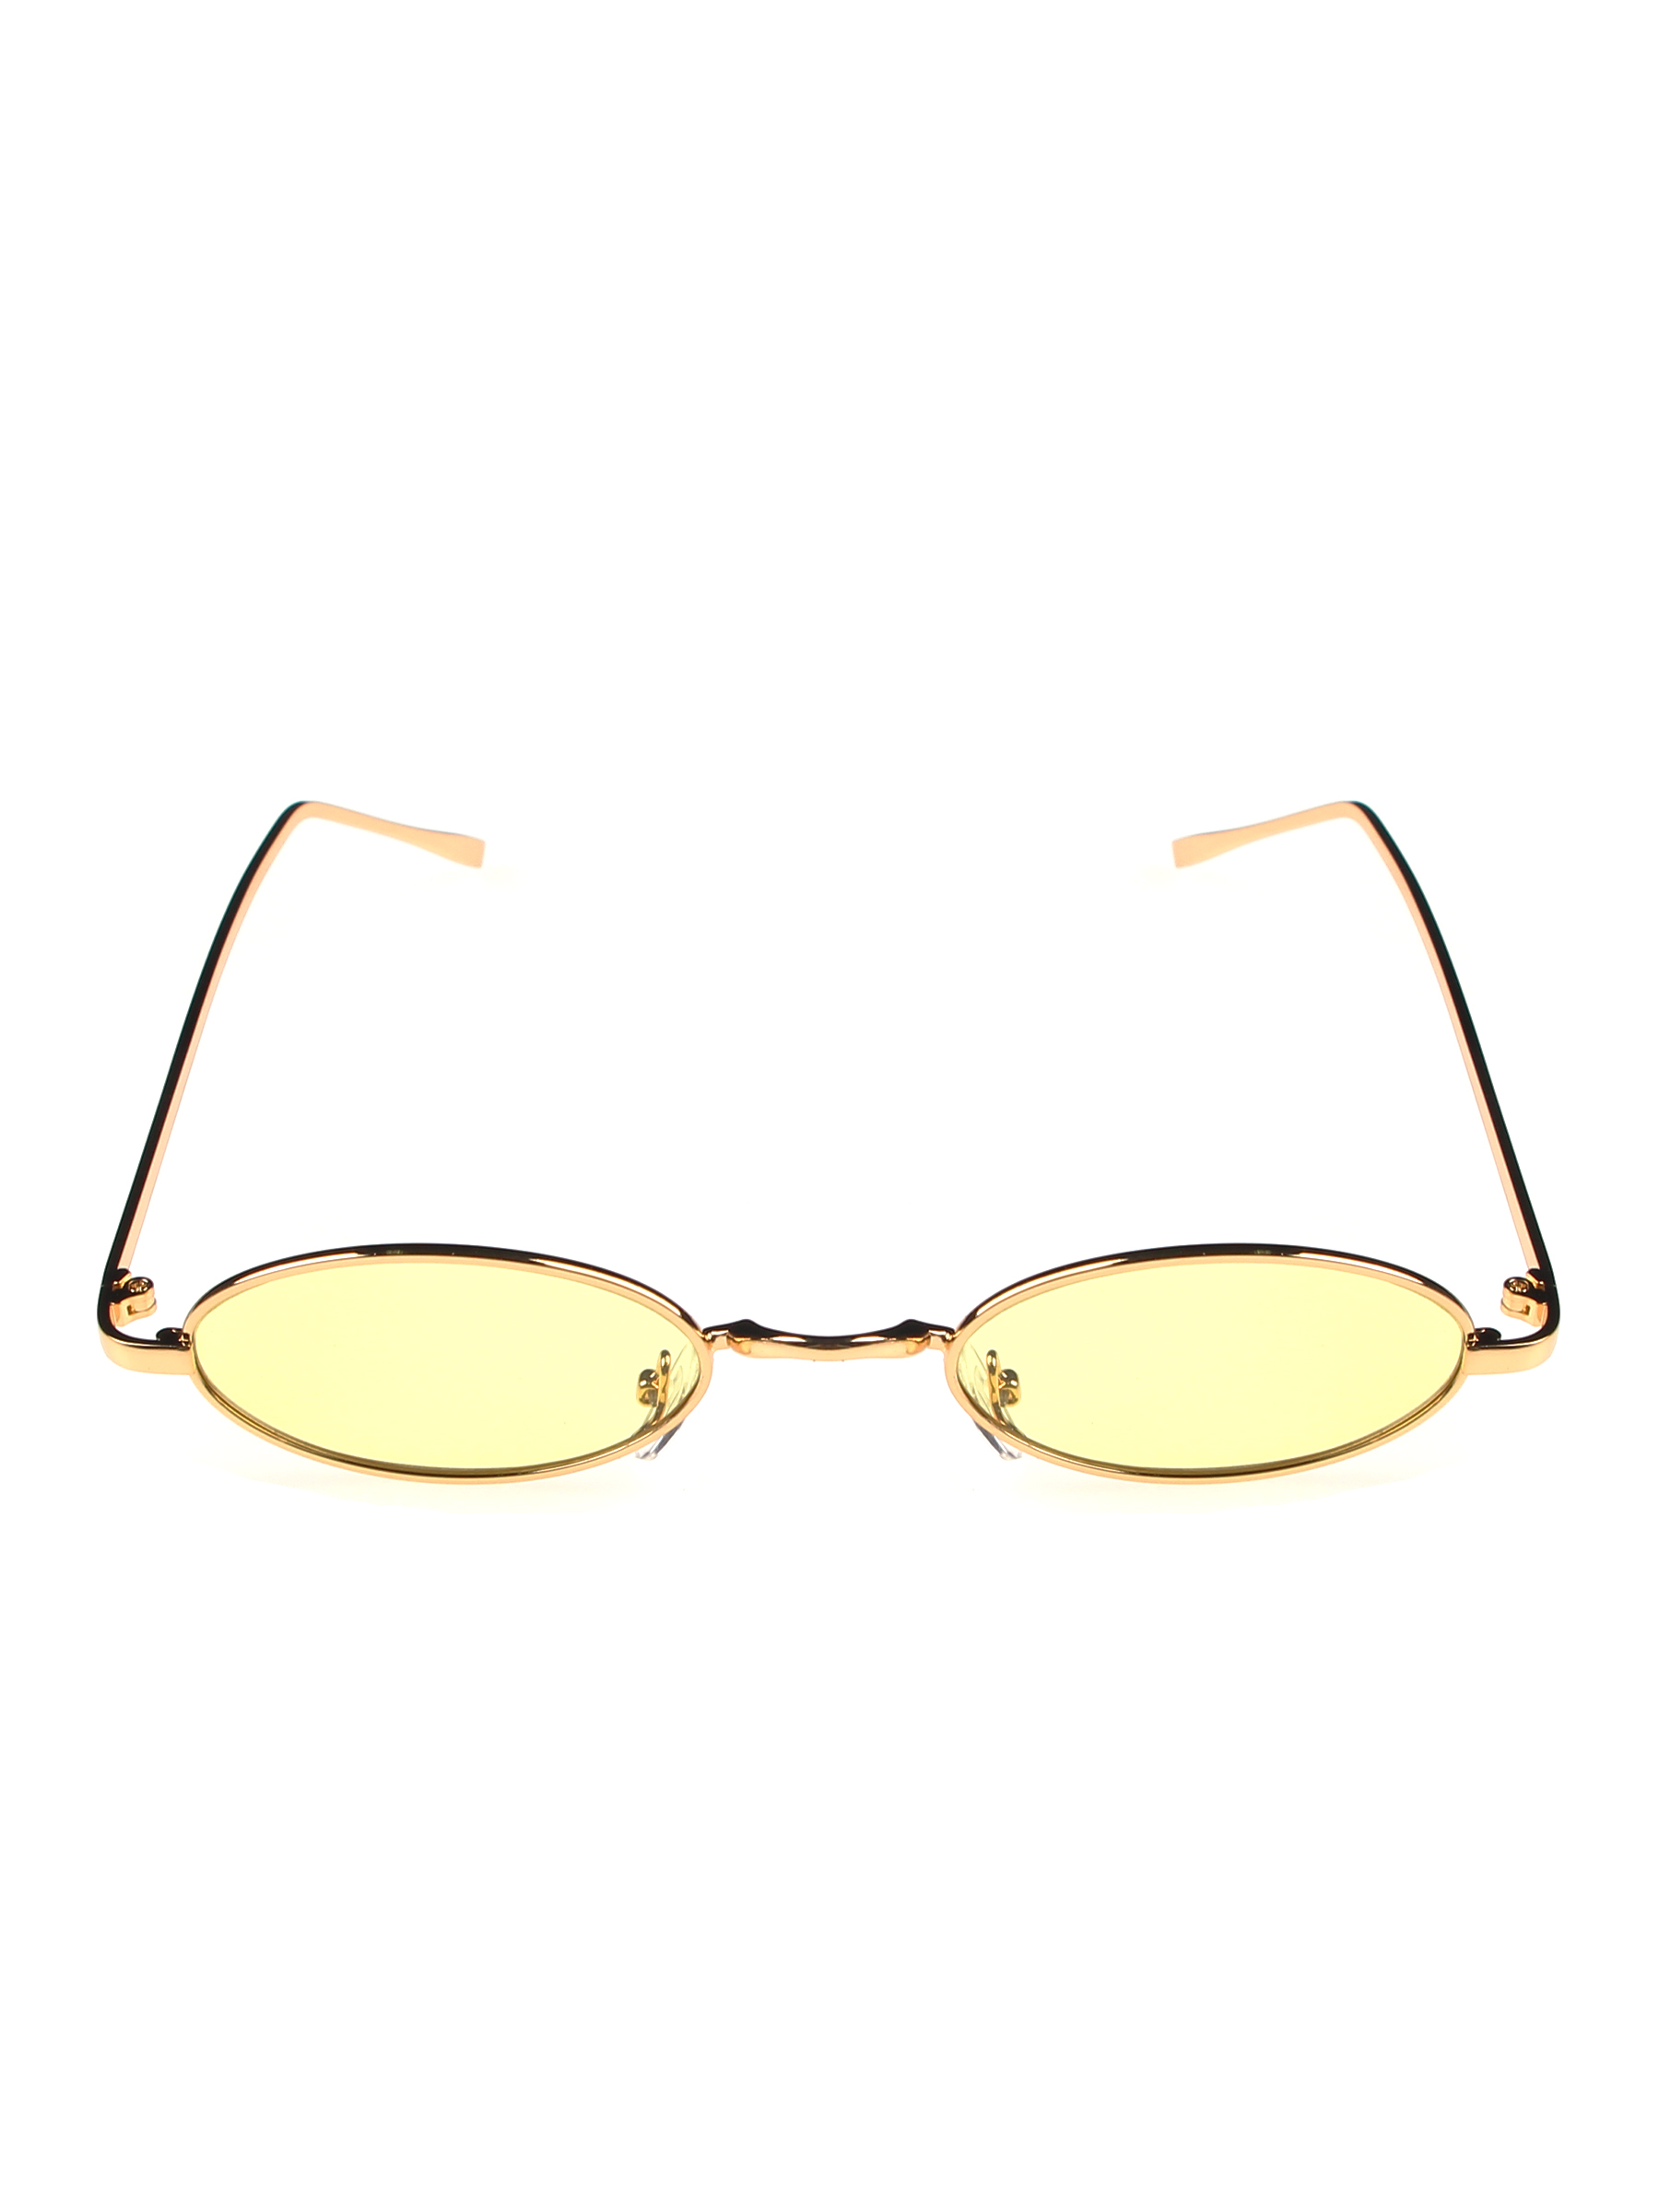 Солнцезащитные очки женские Pretty Mania NDP029 желтые